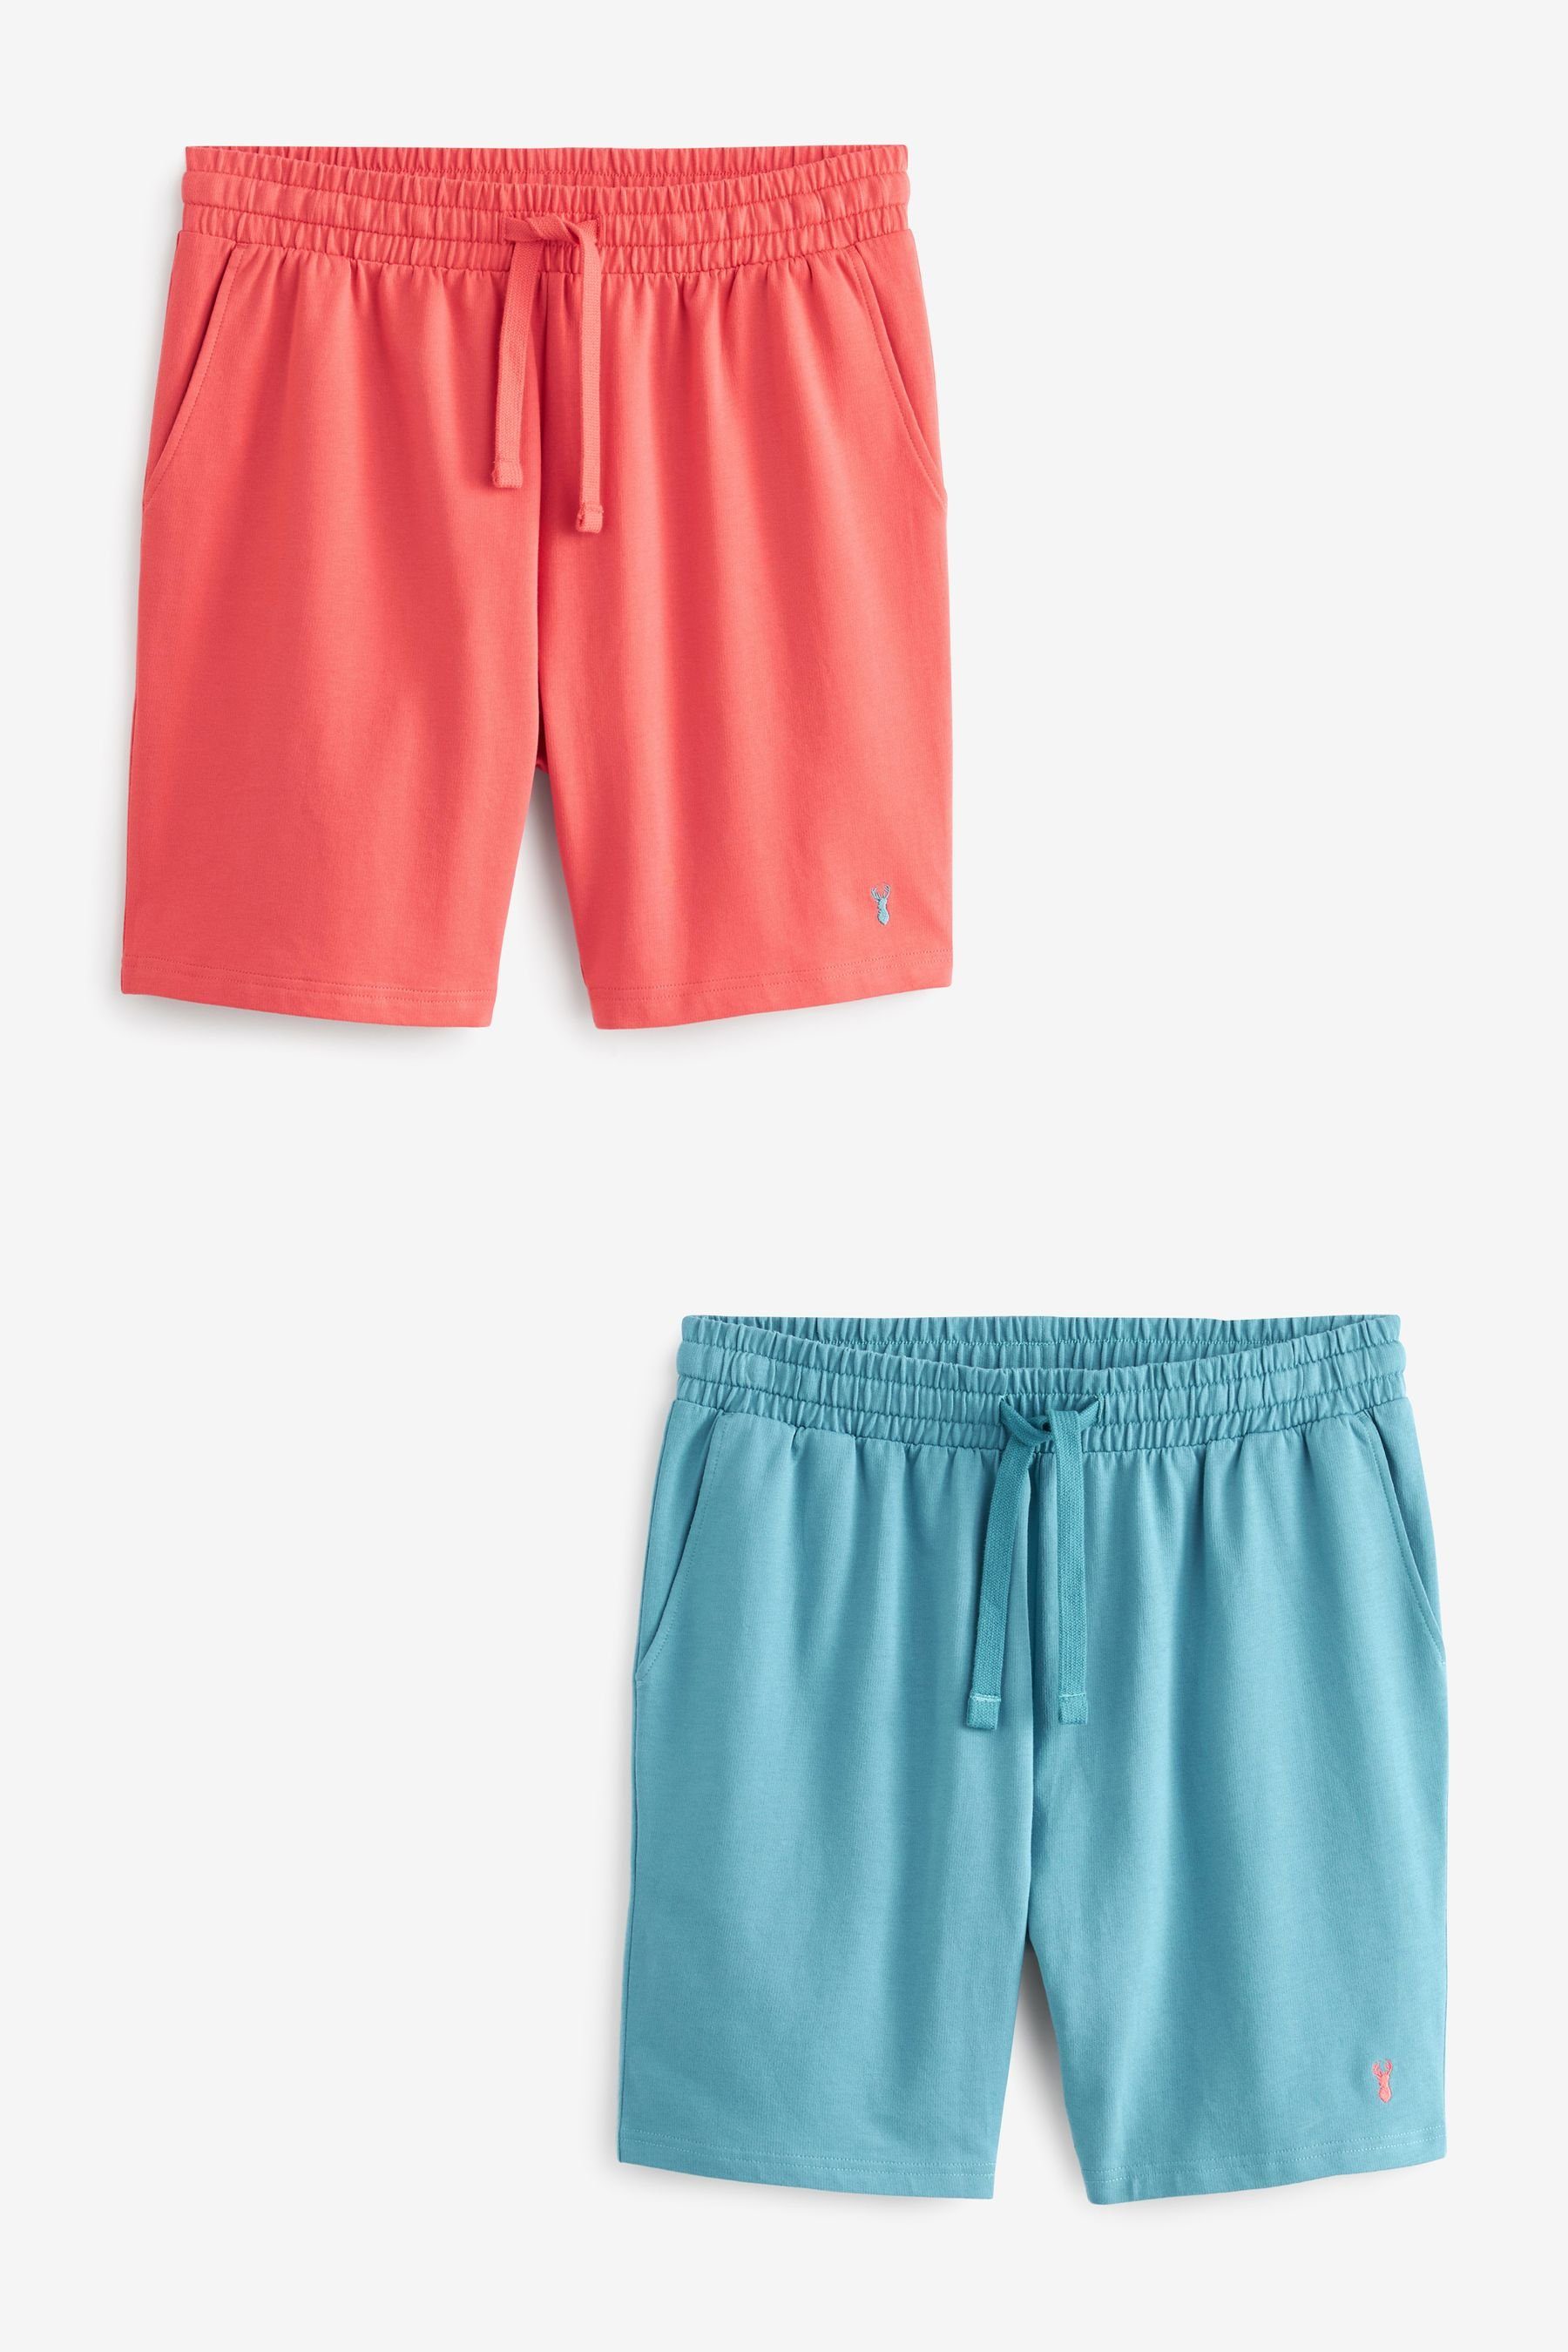 Next Schlafshorts Leichte Shorts, 2er-Pack (2-tlg) Pink/Blue